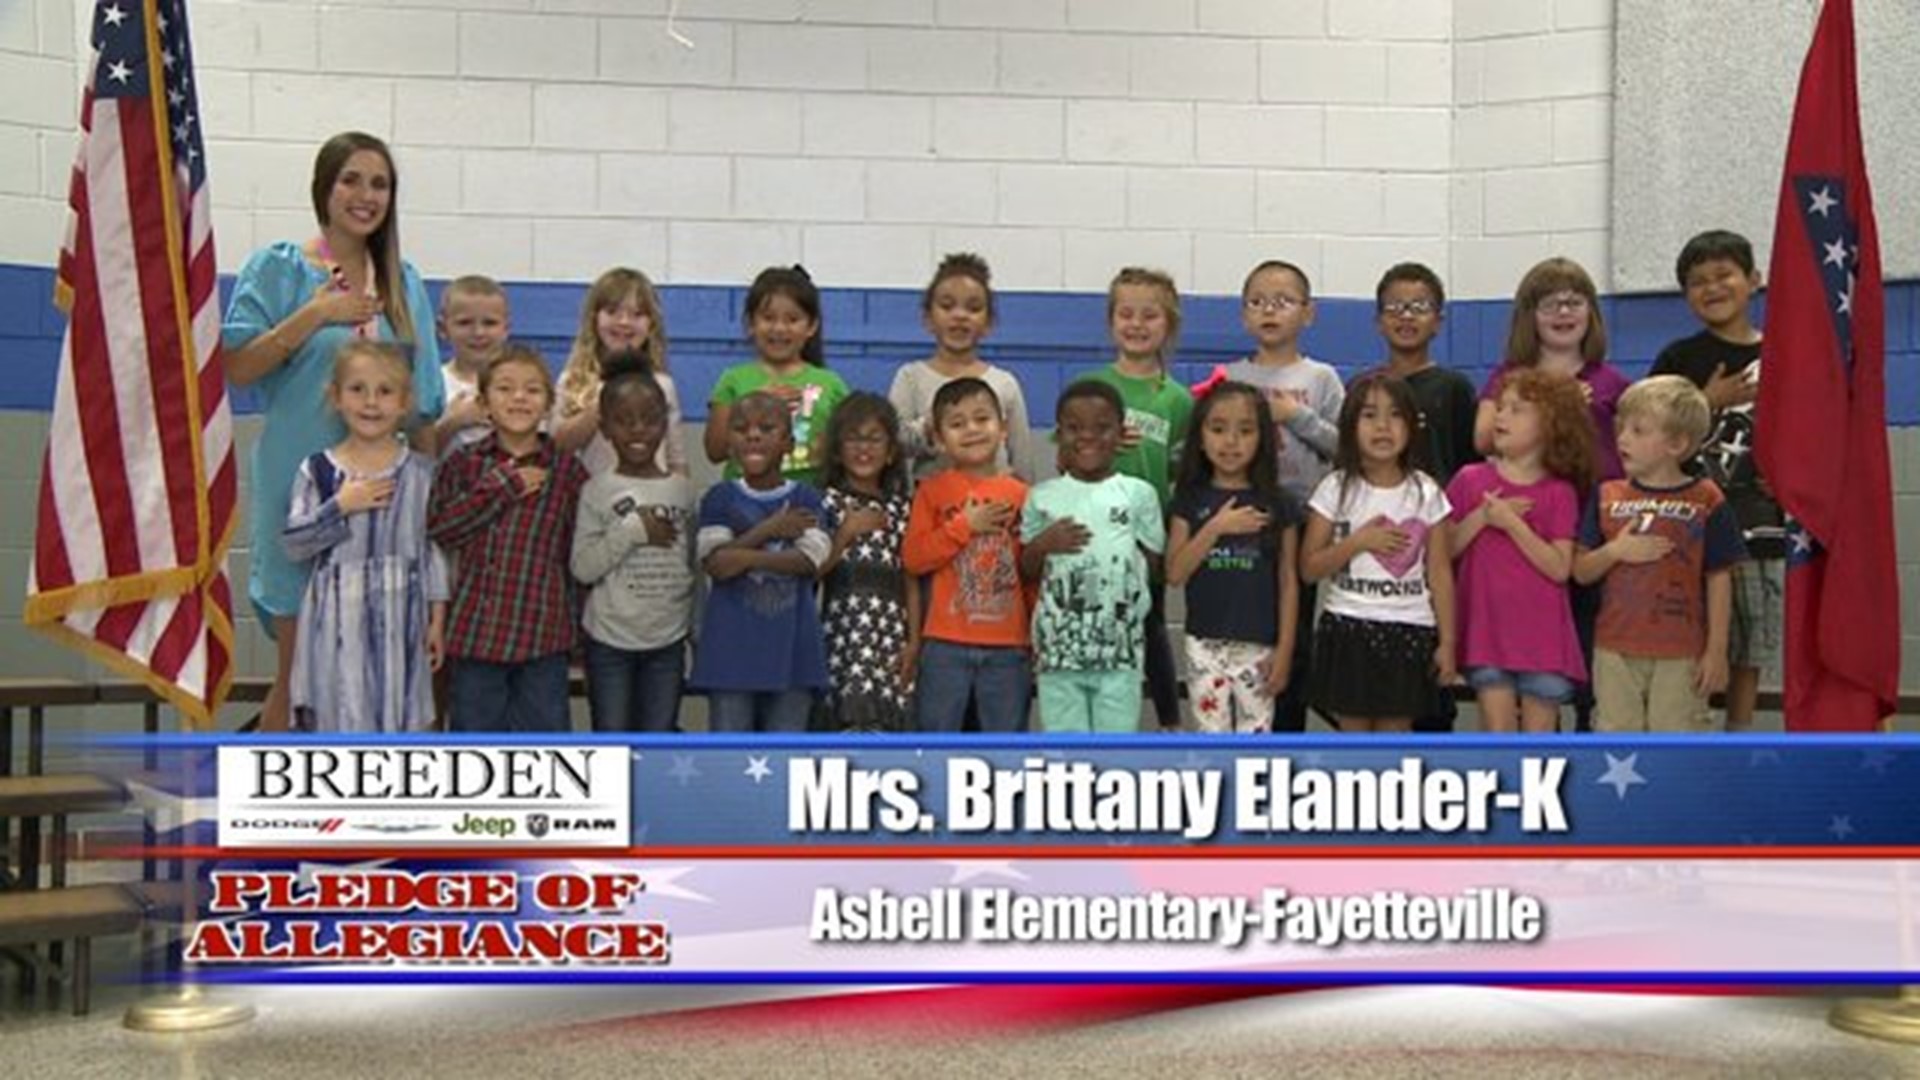 Asbell Elementary, Fayetteville - Mrs. Brittany Elander - Kindergarten